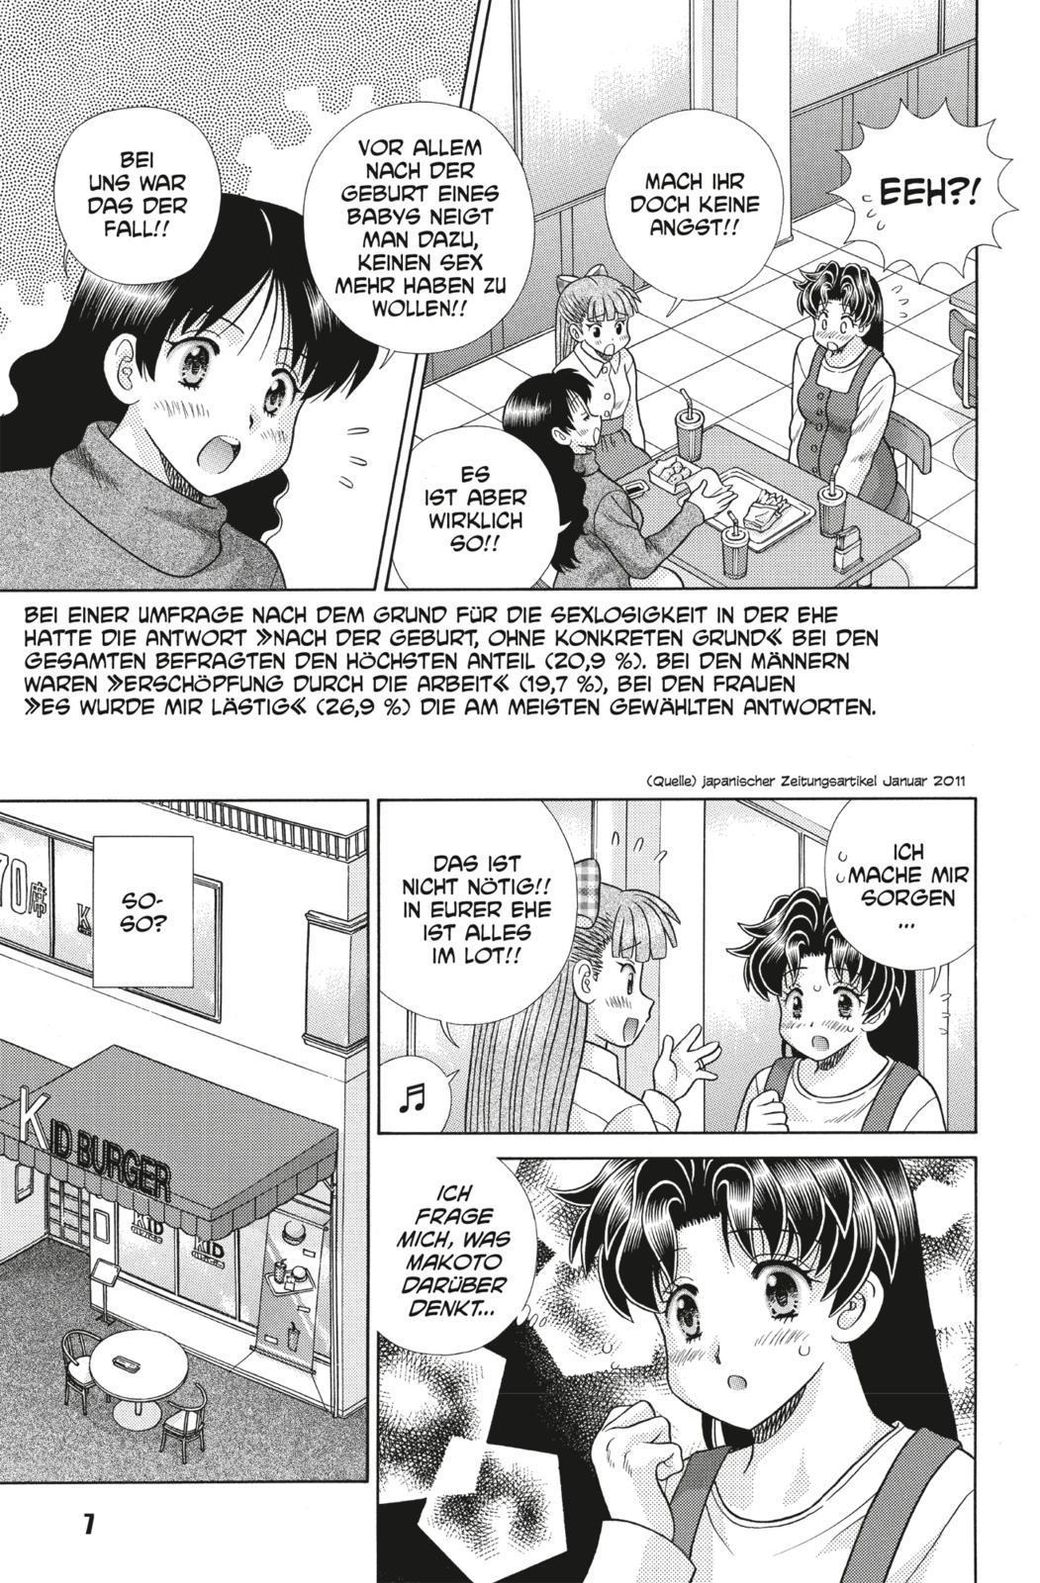 Espacioso Izar a nombre de Manga Love Story Bd.74 Buch bei Weltbild.at online bestellen